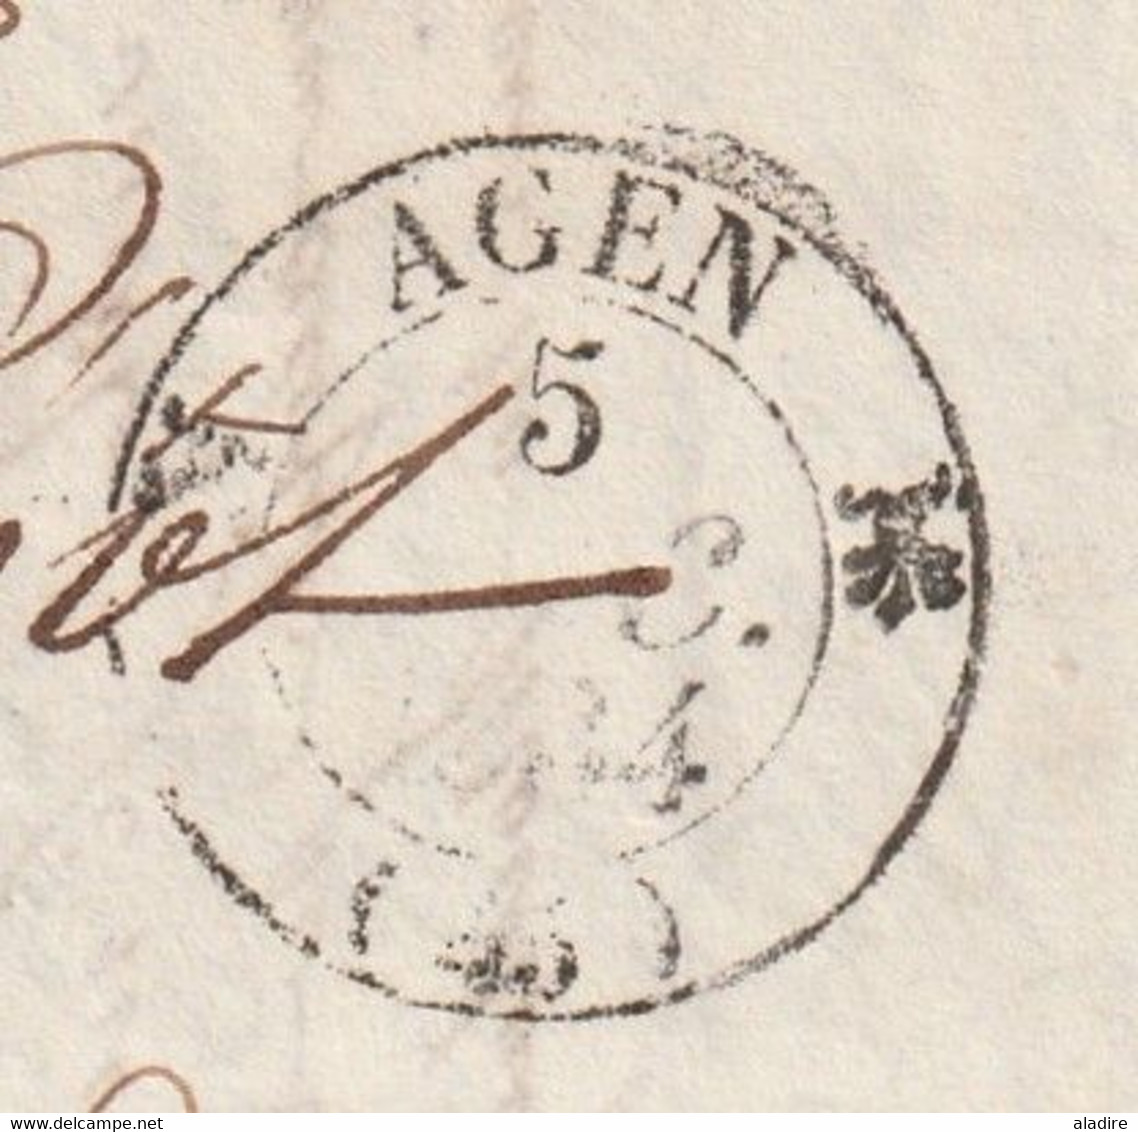 AGEN - Lot Et Garonne, Marcophilie - 3 Cachets à Date: 1834, 1835 Et 1839 - 2 Lettres Et 1 Enveloppe Pliées - 1801-1848: Vorläufer XIX